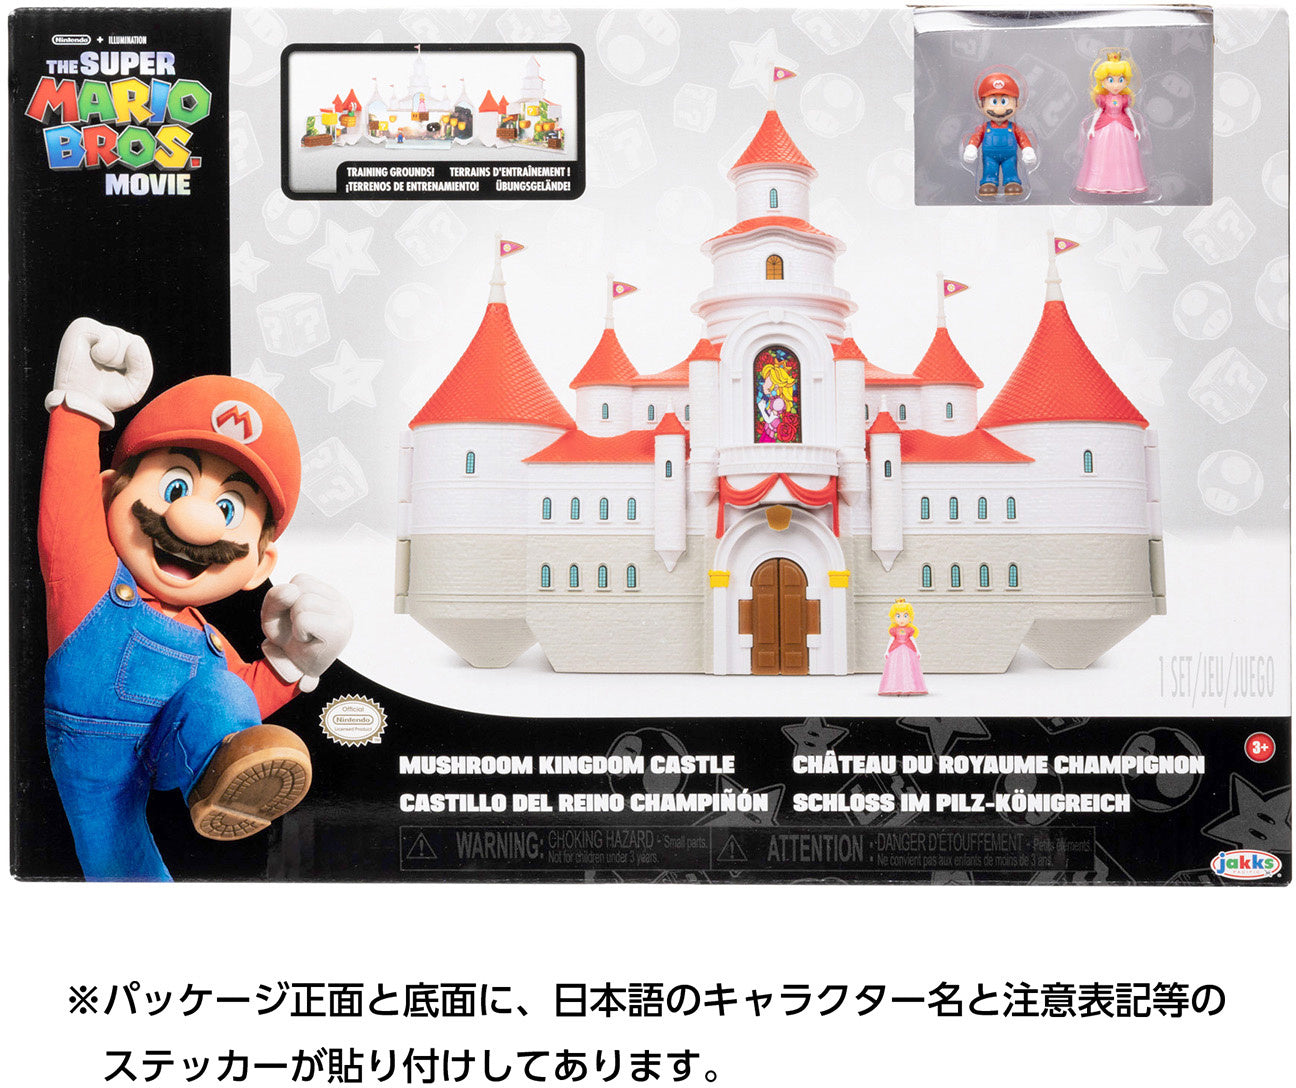 New Super Mario Bros - ArcadeFlix